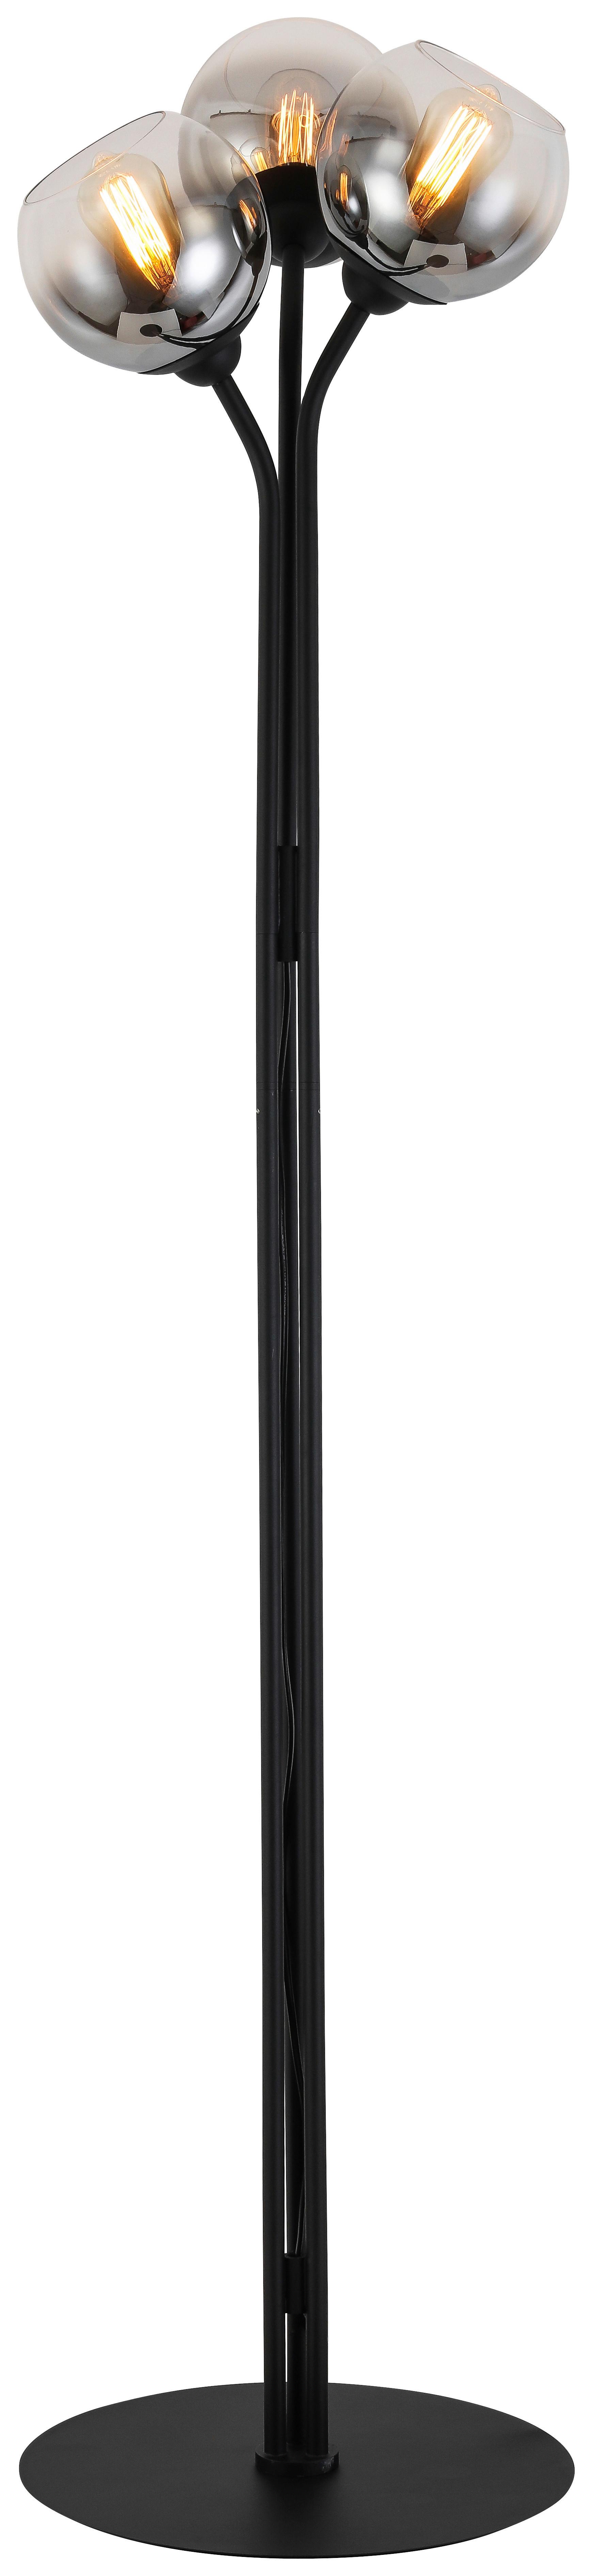 Stojací Svítidlo Kian, Bez 3x E27 Max. 25w - černá/barvy chromu, Moderní, kov/sklo (42/165cm) - Visiona